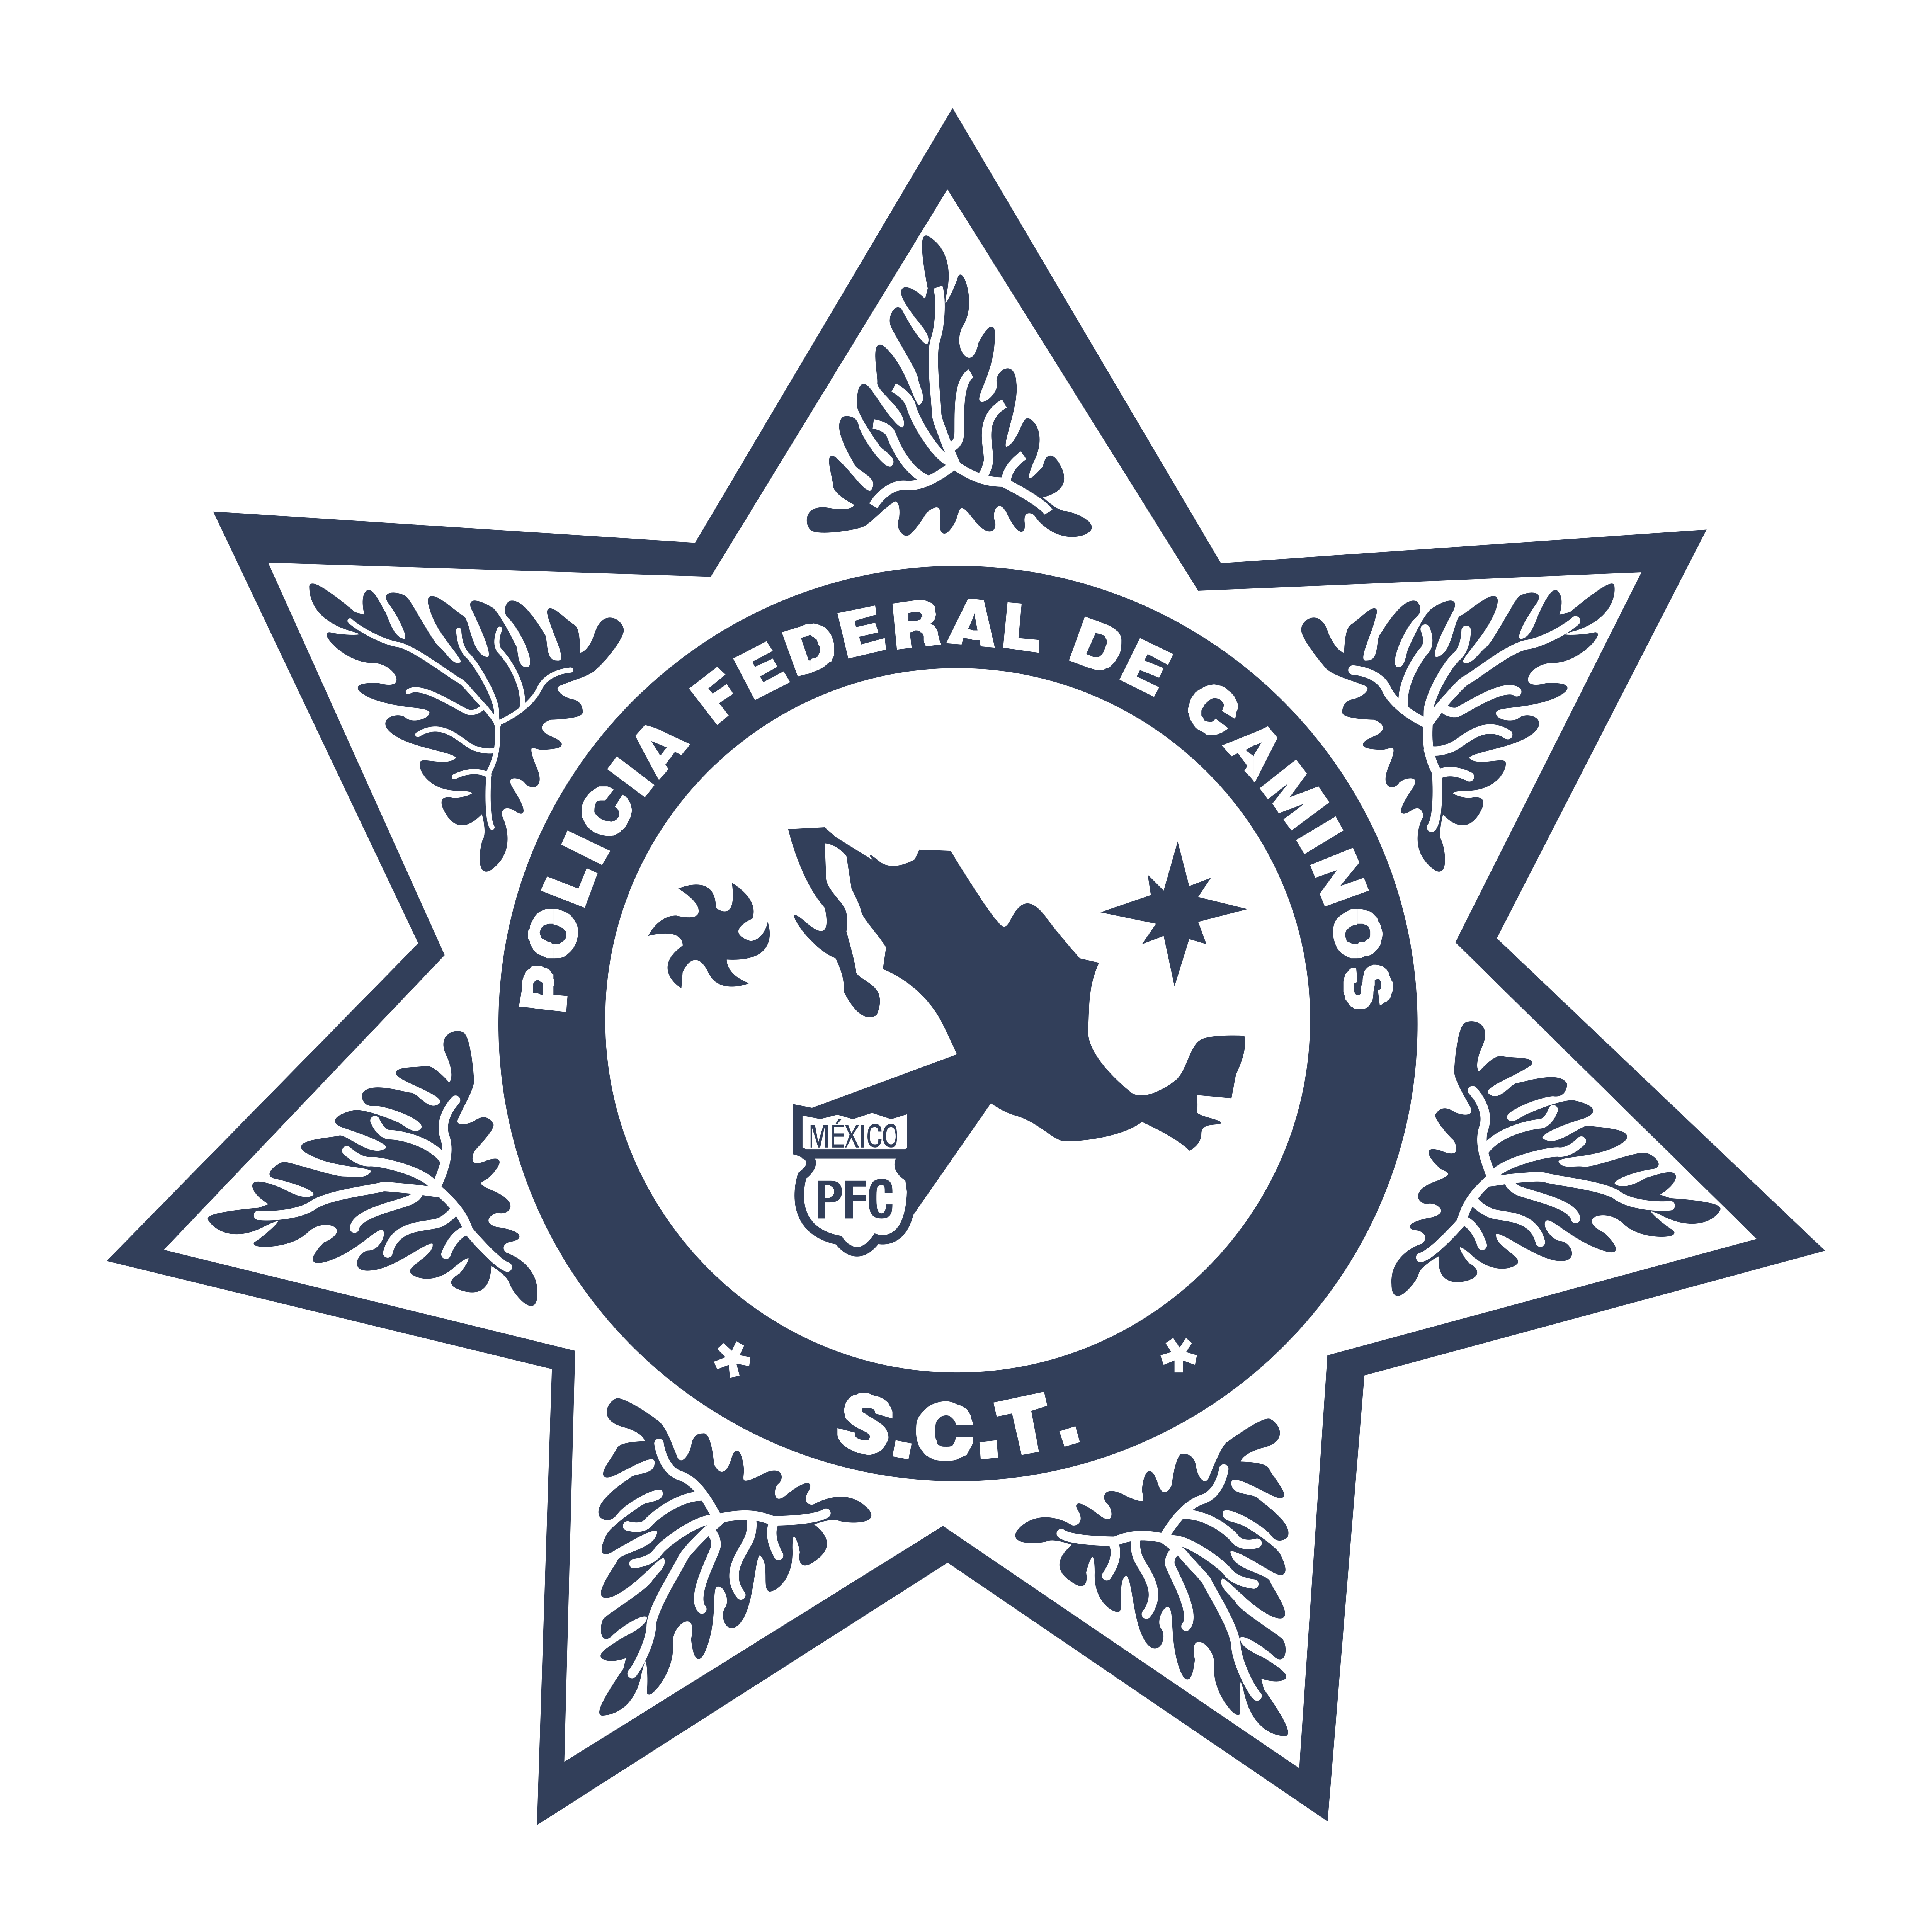 Download Policia Federal de Caminos - Logos Download